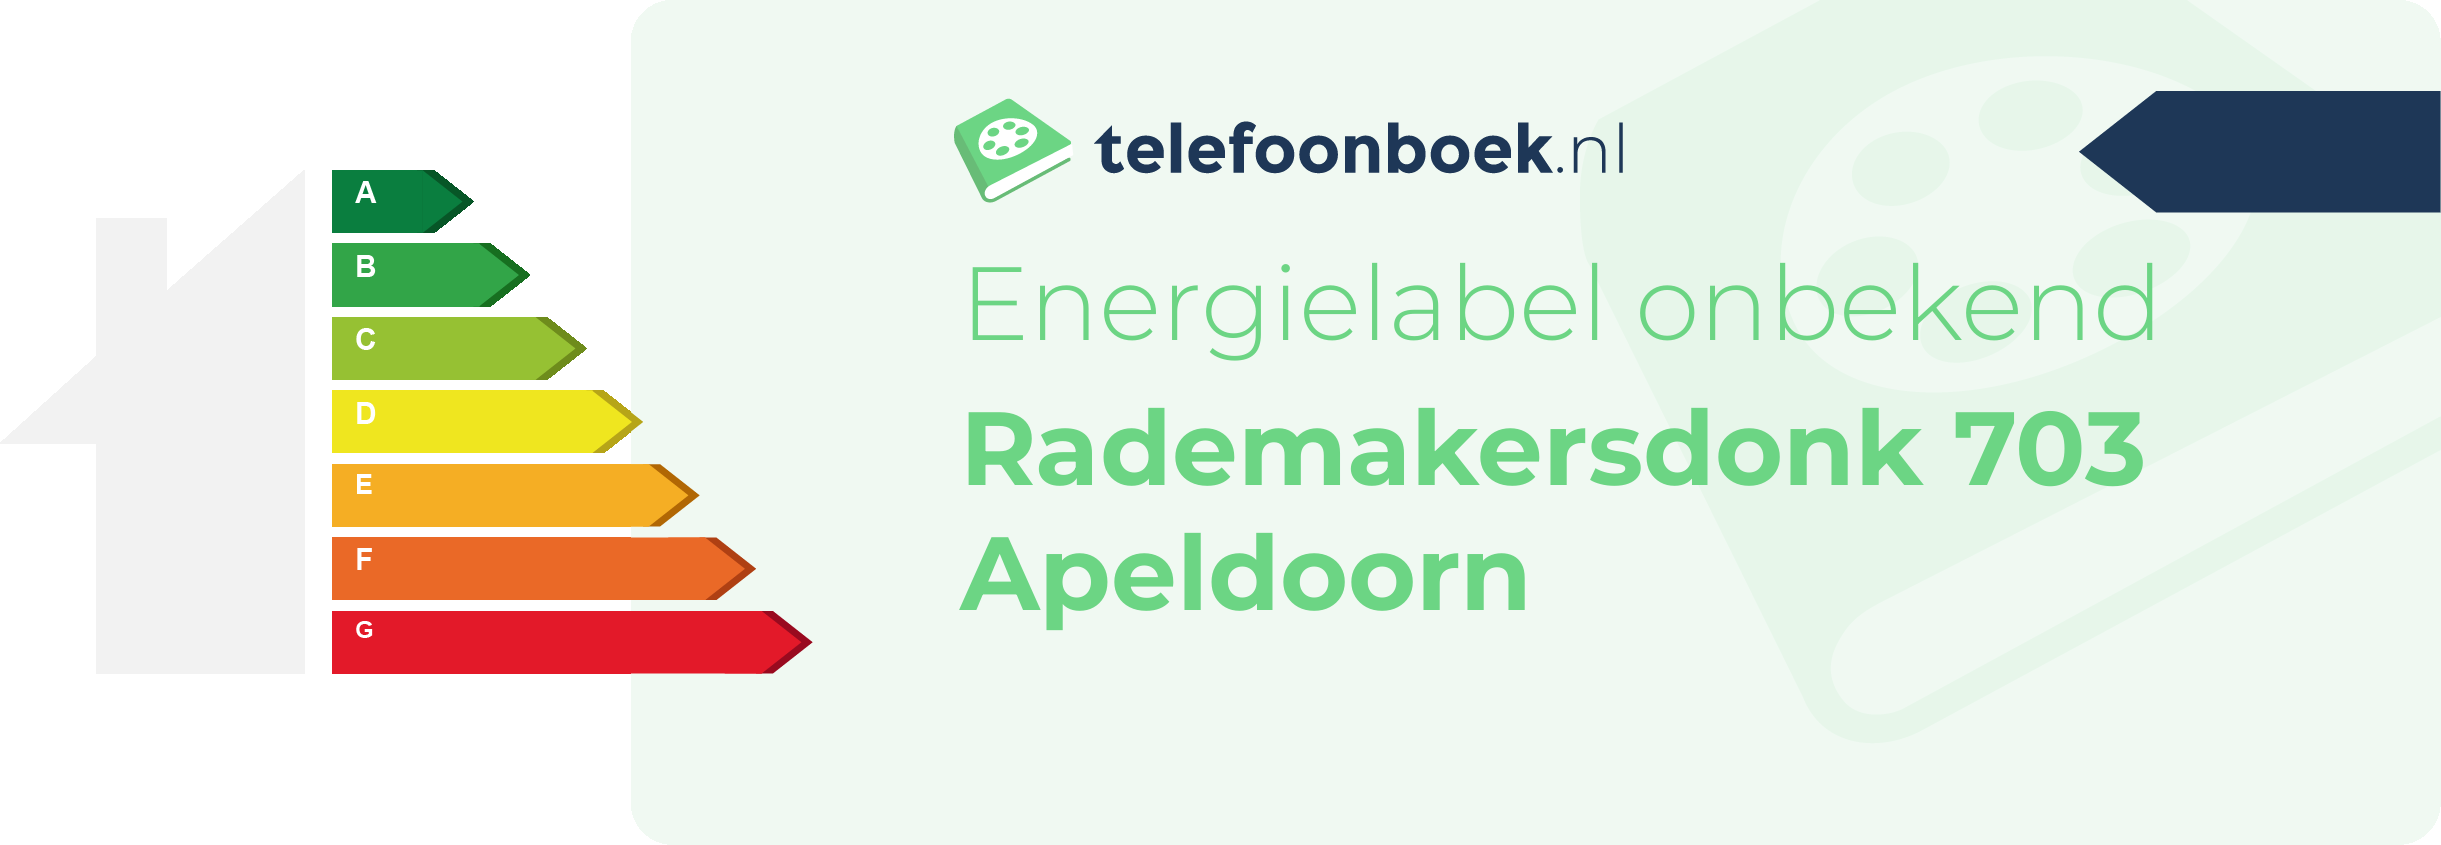 Energielabel Rademakersdonk 703 Apeldoorn